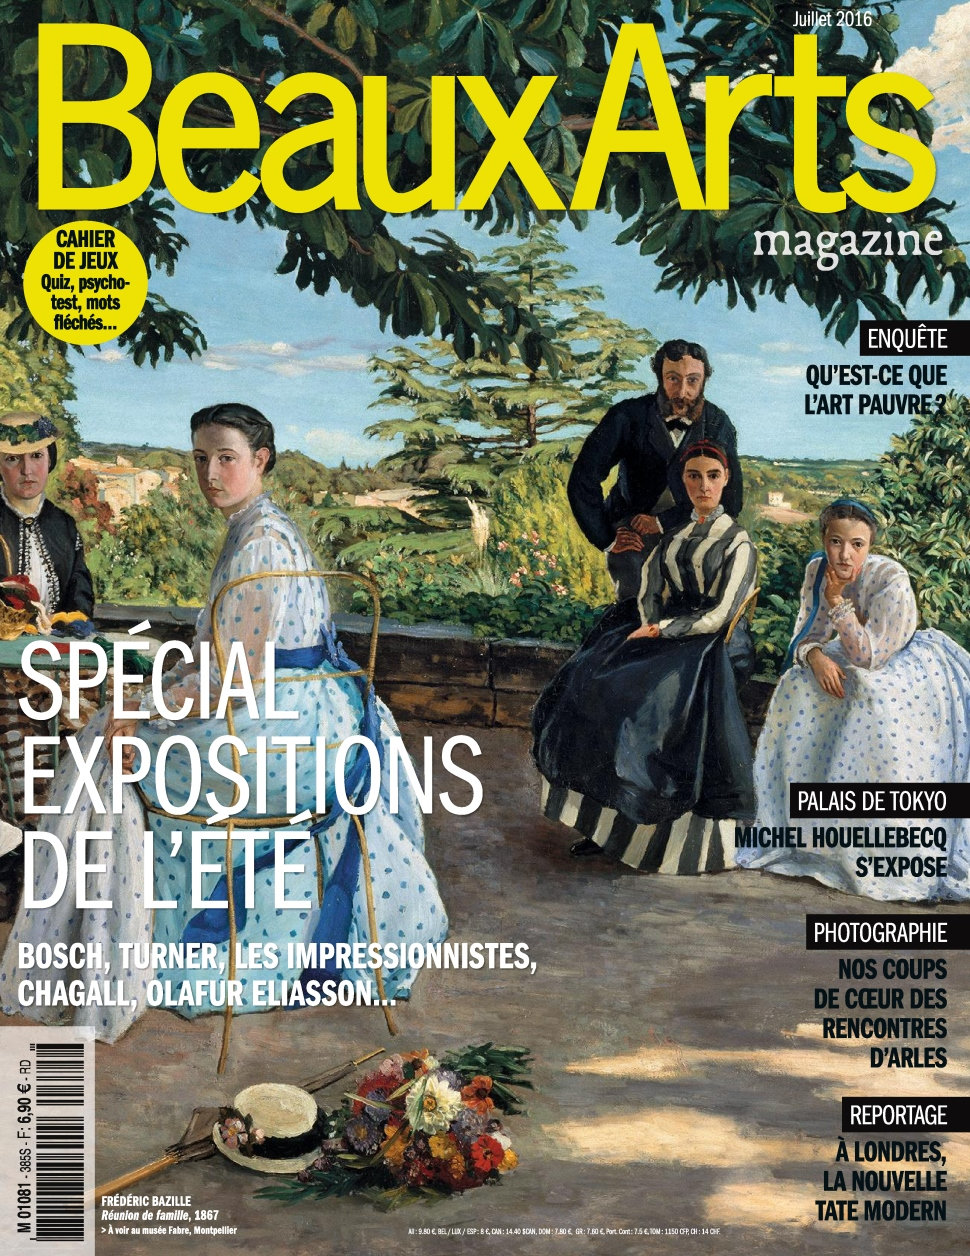 Beaux Arts magazine N°385 - Juillet 2016